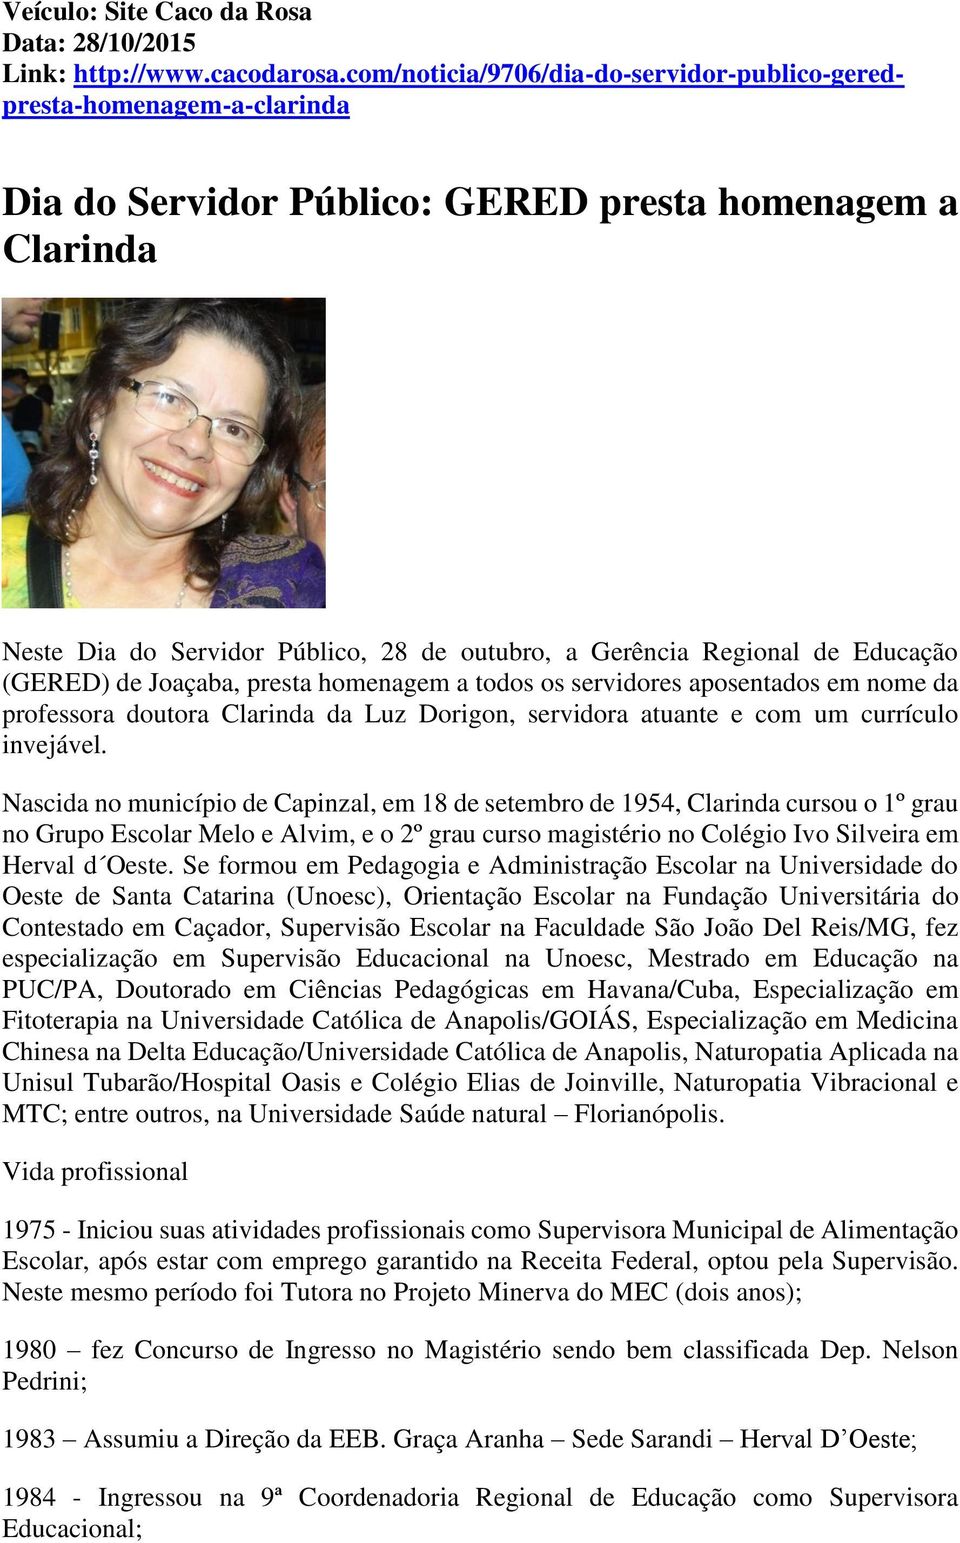 de Educação (GERED) de Joaçaba, presta homenagem a todos os servidores aposentados em nome da professora doutora Clarinda da Luz Dorigon, servidora atuante e com um currículo invejável.